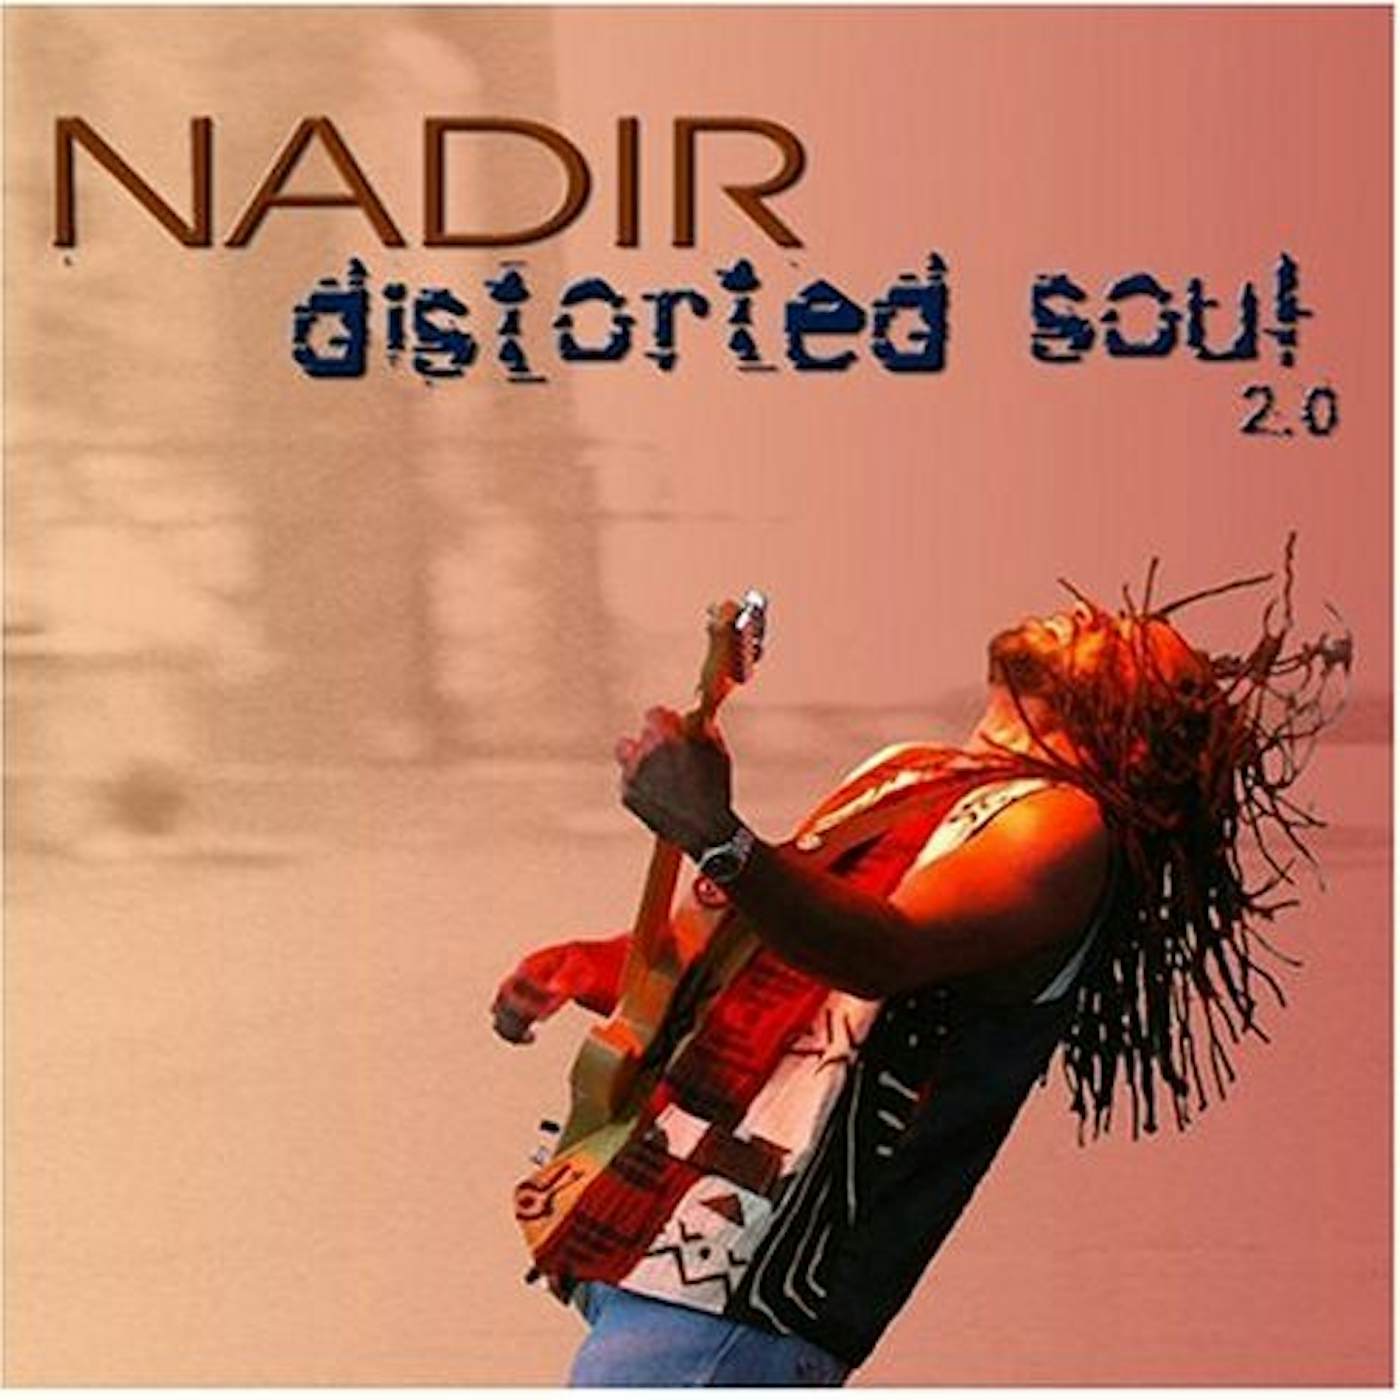 Nadir DISTORTED SOUL 2.0 CD